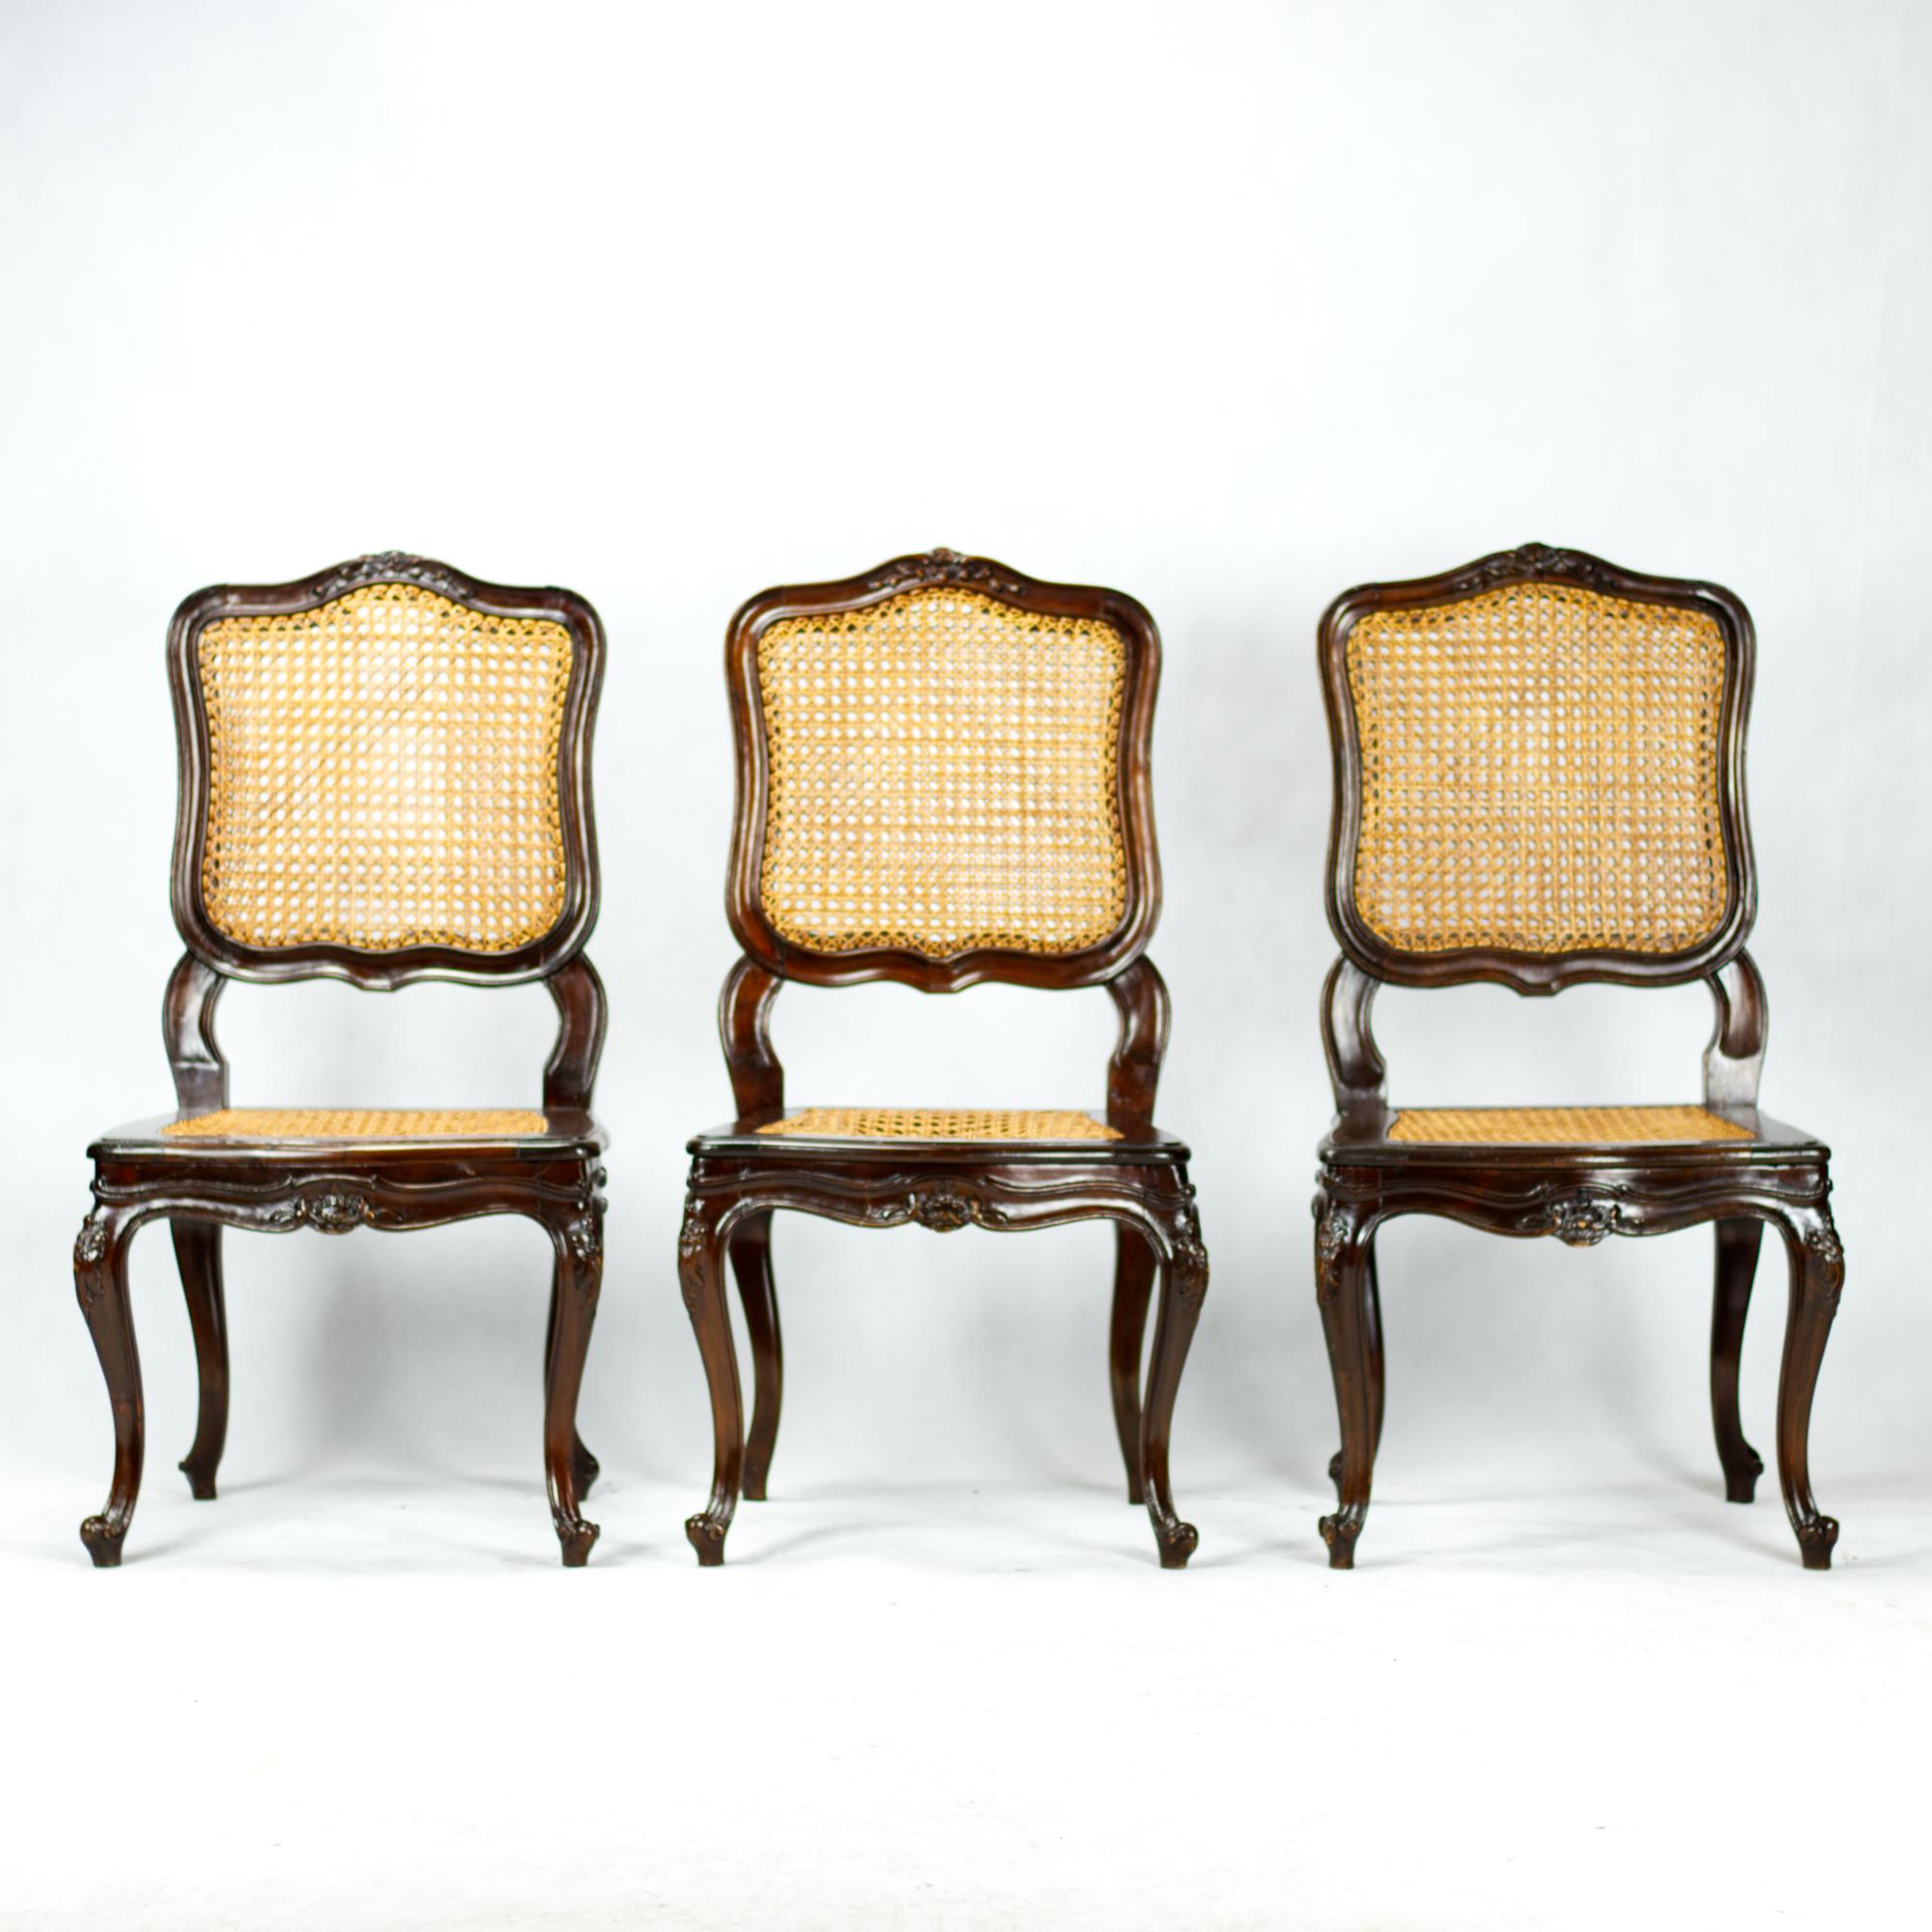 Un ensemble de six chaises de salle à manger françaises sculptées à la main de la seconde moitié du 19ème siècle avec des sièges et des dossiers en rotin.
Chaises de salle à manger de style Louis XV en noyer avec des sculptures de feuilles bien